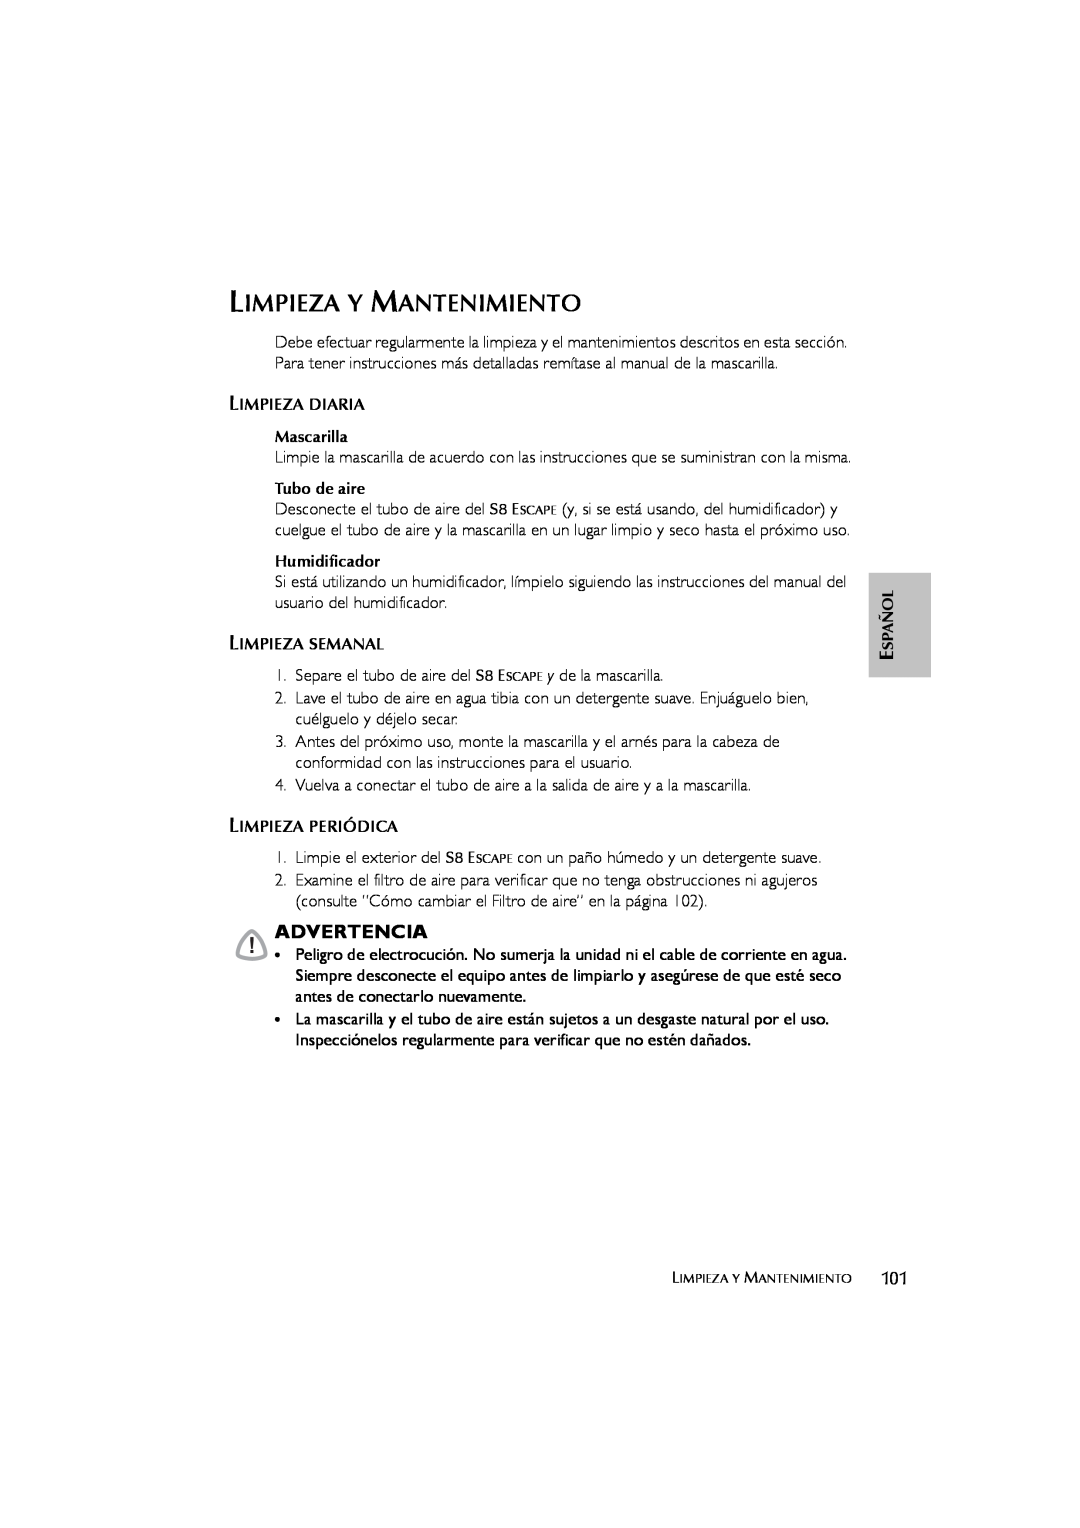 ResMed s8 user manual Limpieza Y Mantenimiento, Advertencia 